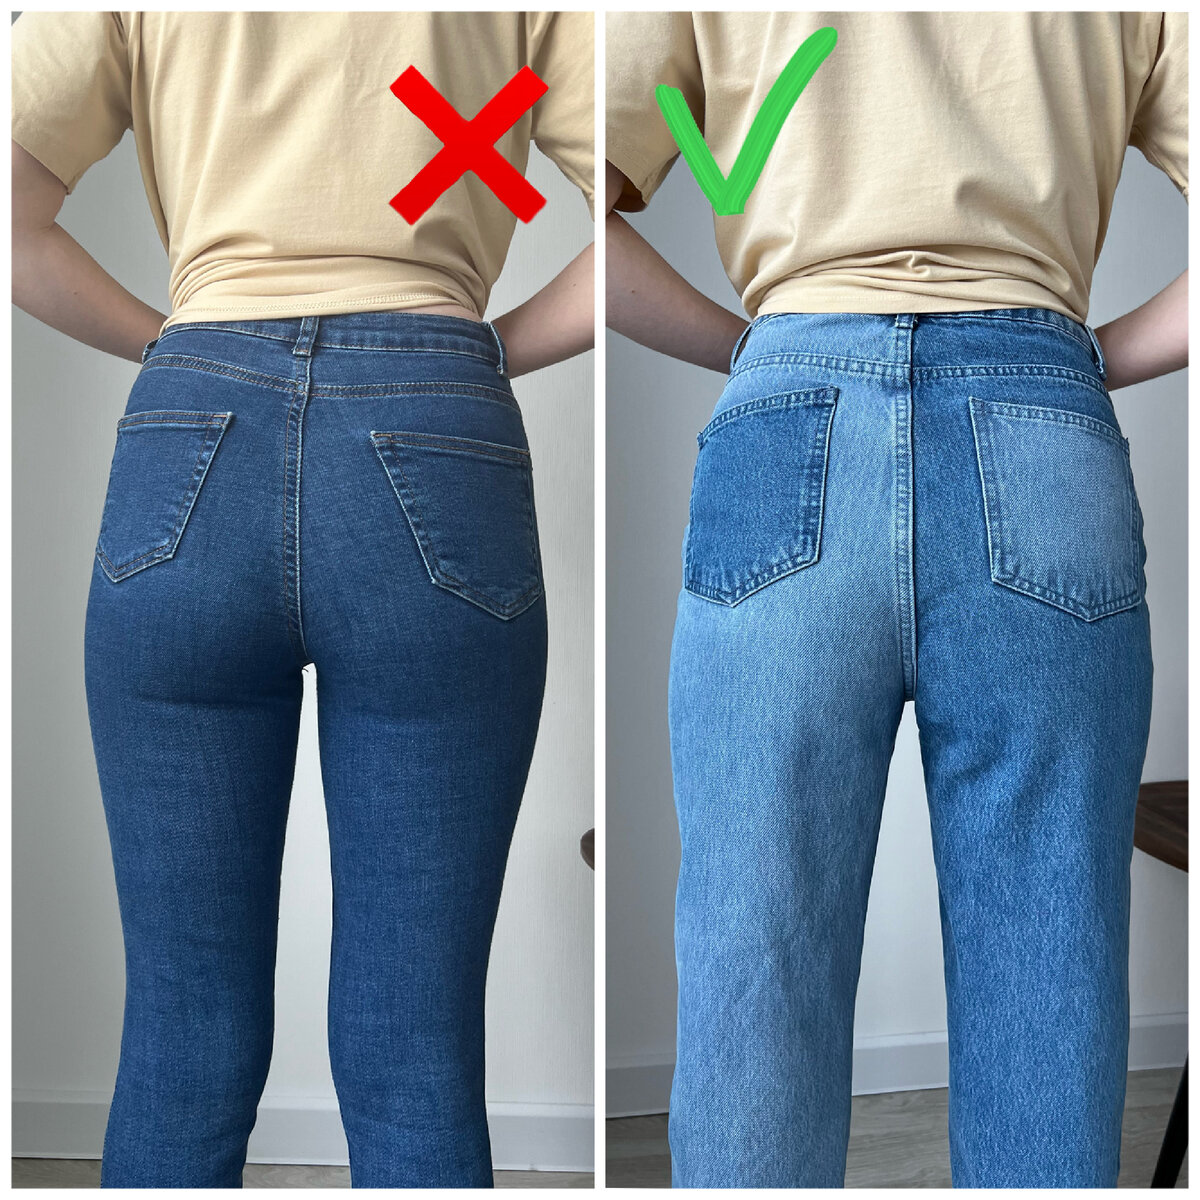 Изображения по запросу Попа джинсах